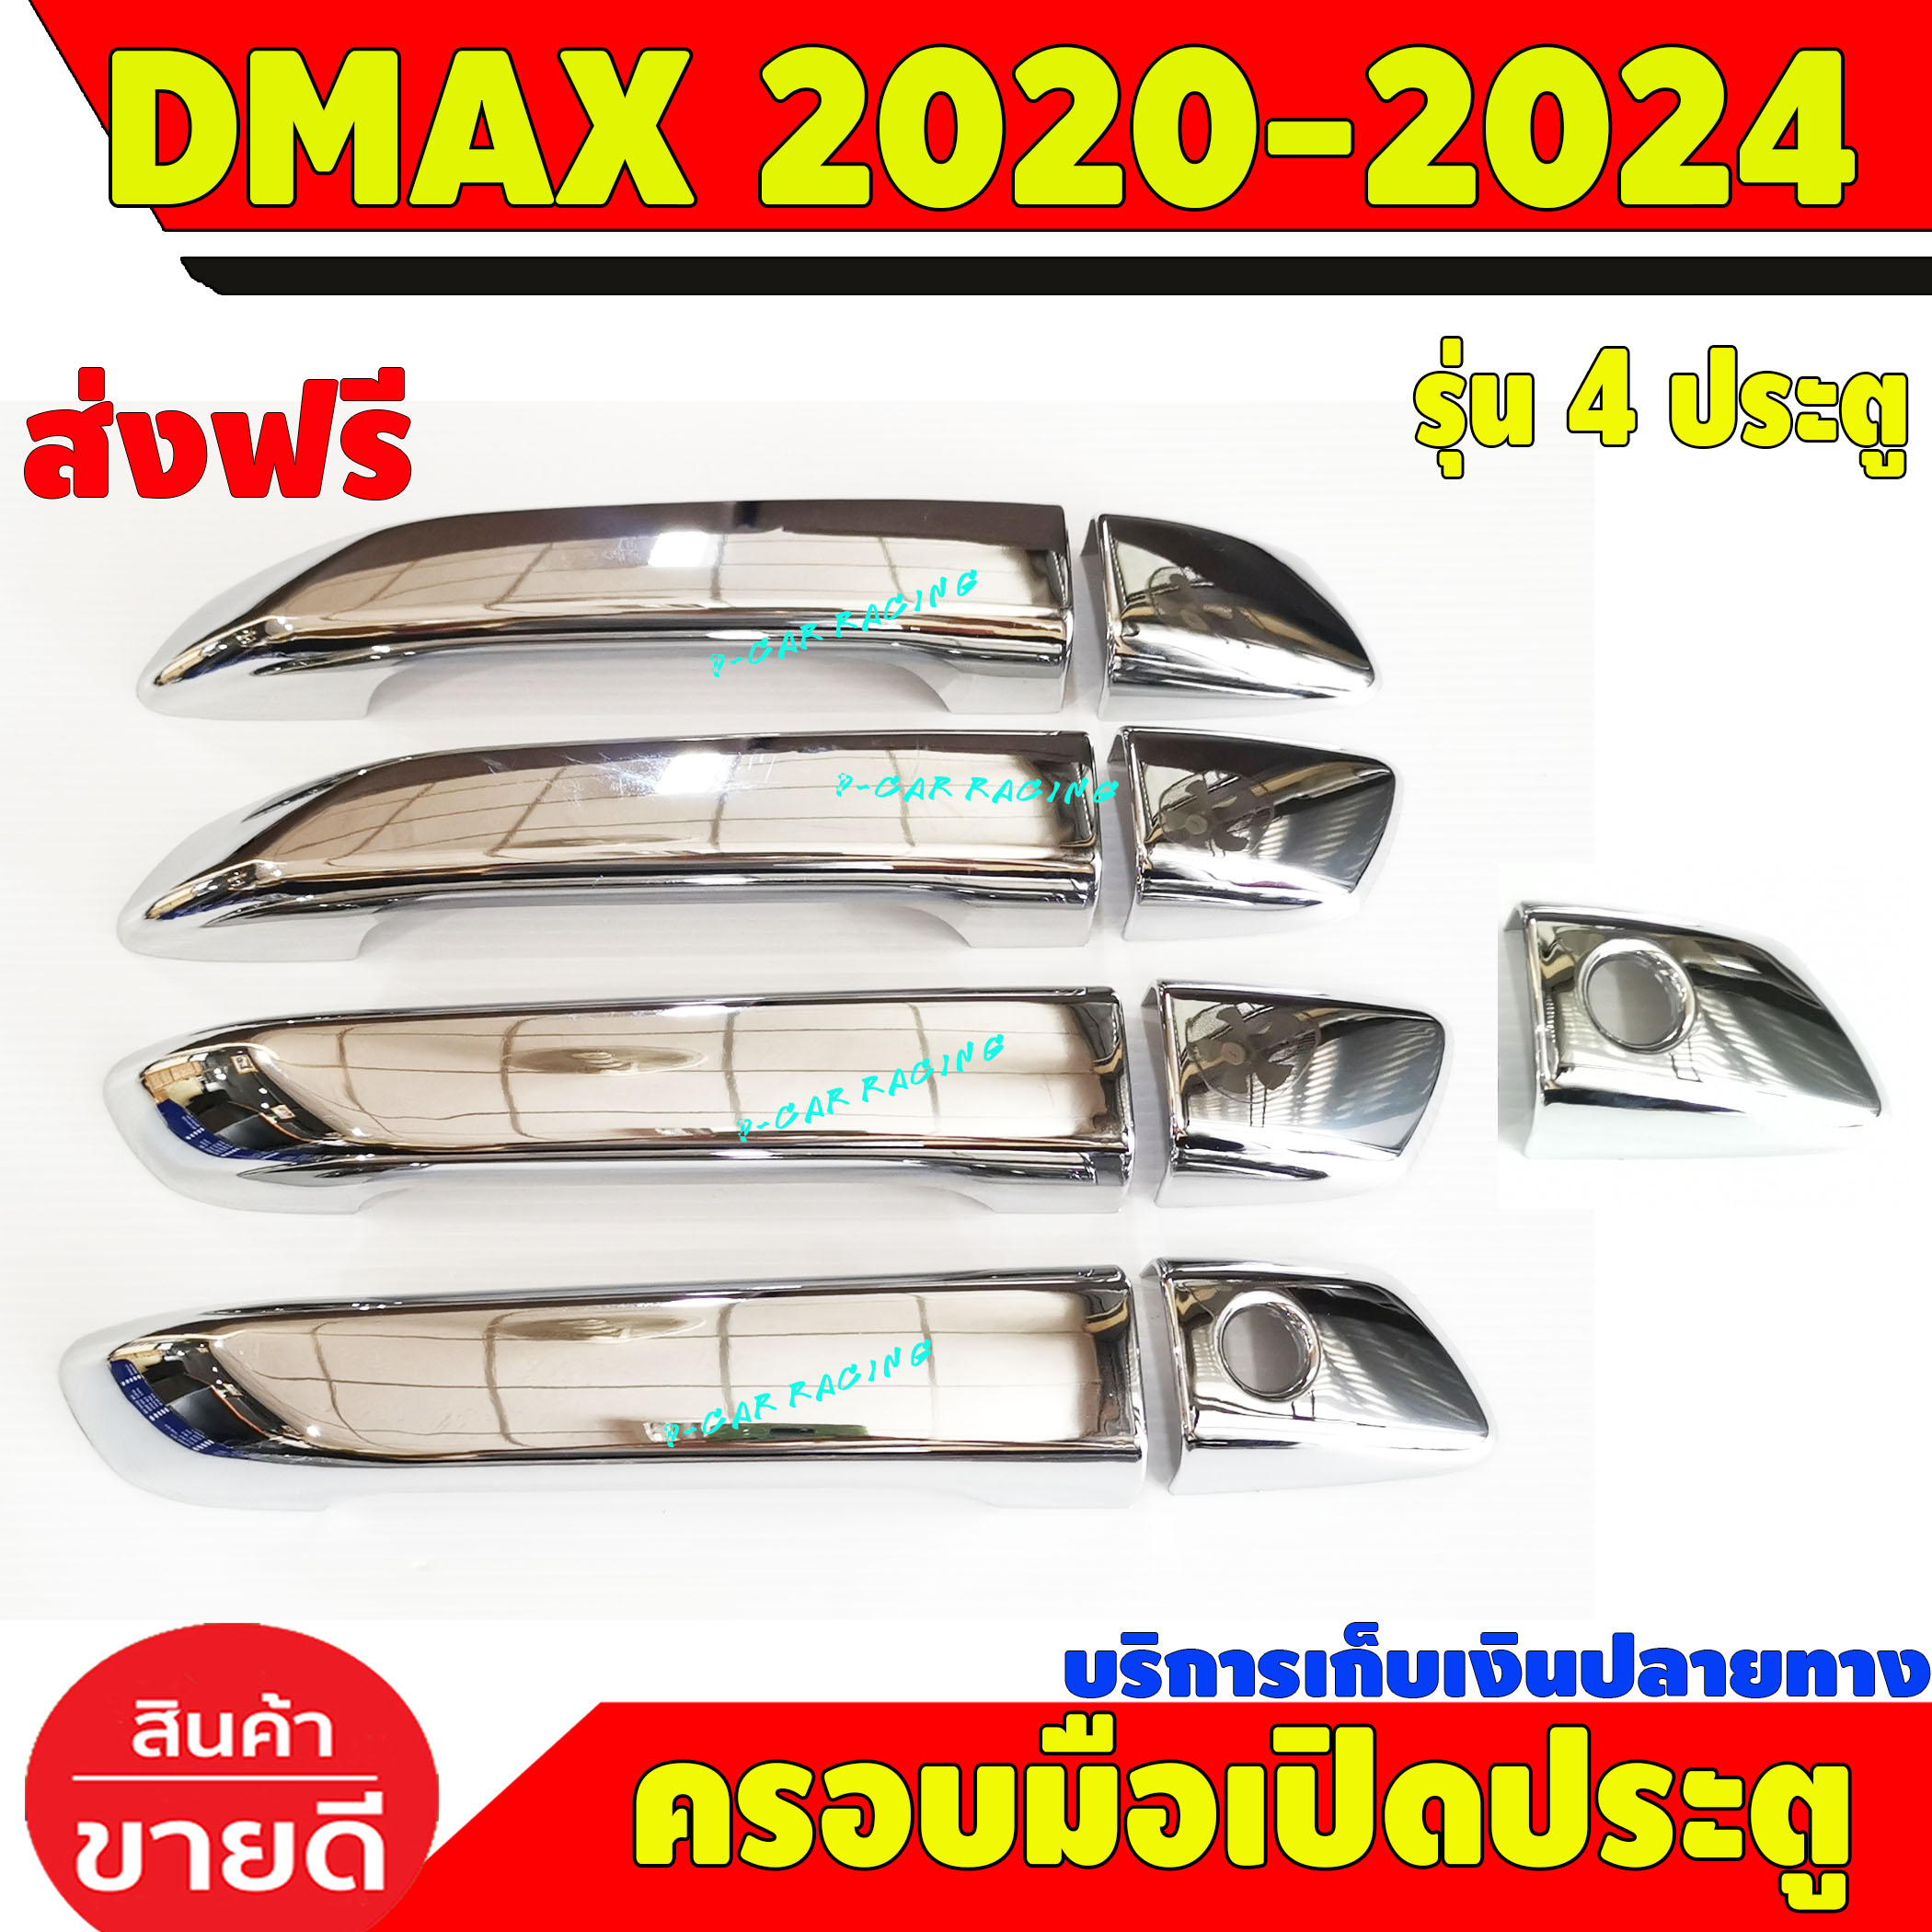 ครอบมือเปิดประตู ครอบมือจับประตู รุ่นรองท๊อป 4 ประตู ชุปโครเมี่ยม อีซูซุ ดีแม็ค Isuzu damx2020 d-max2020 2021 2022 2023 2024 (DMAX 2019โฉม 2020ใส่ได้) BT50 ปี2021ใส่ได้